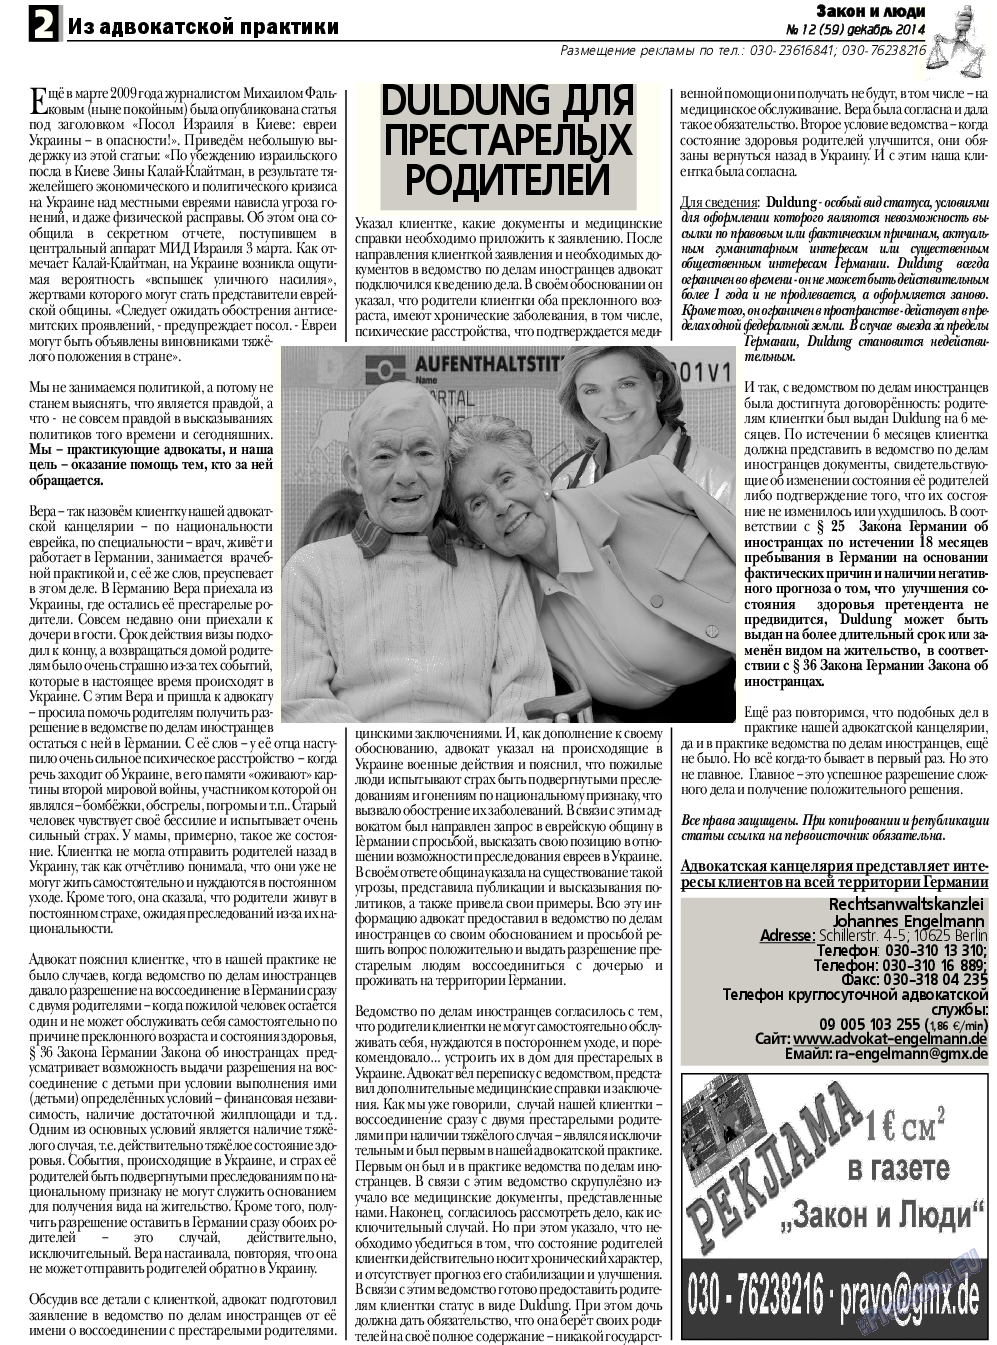 Закон и люди, газета. 2014 №12 стр.2